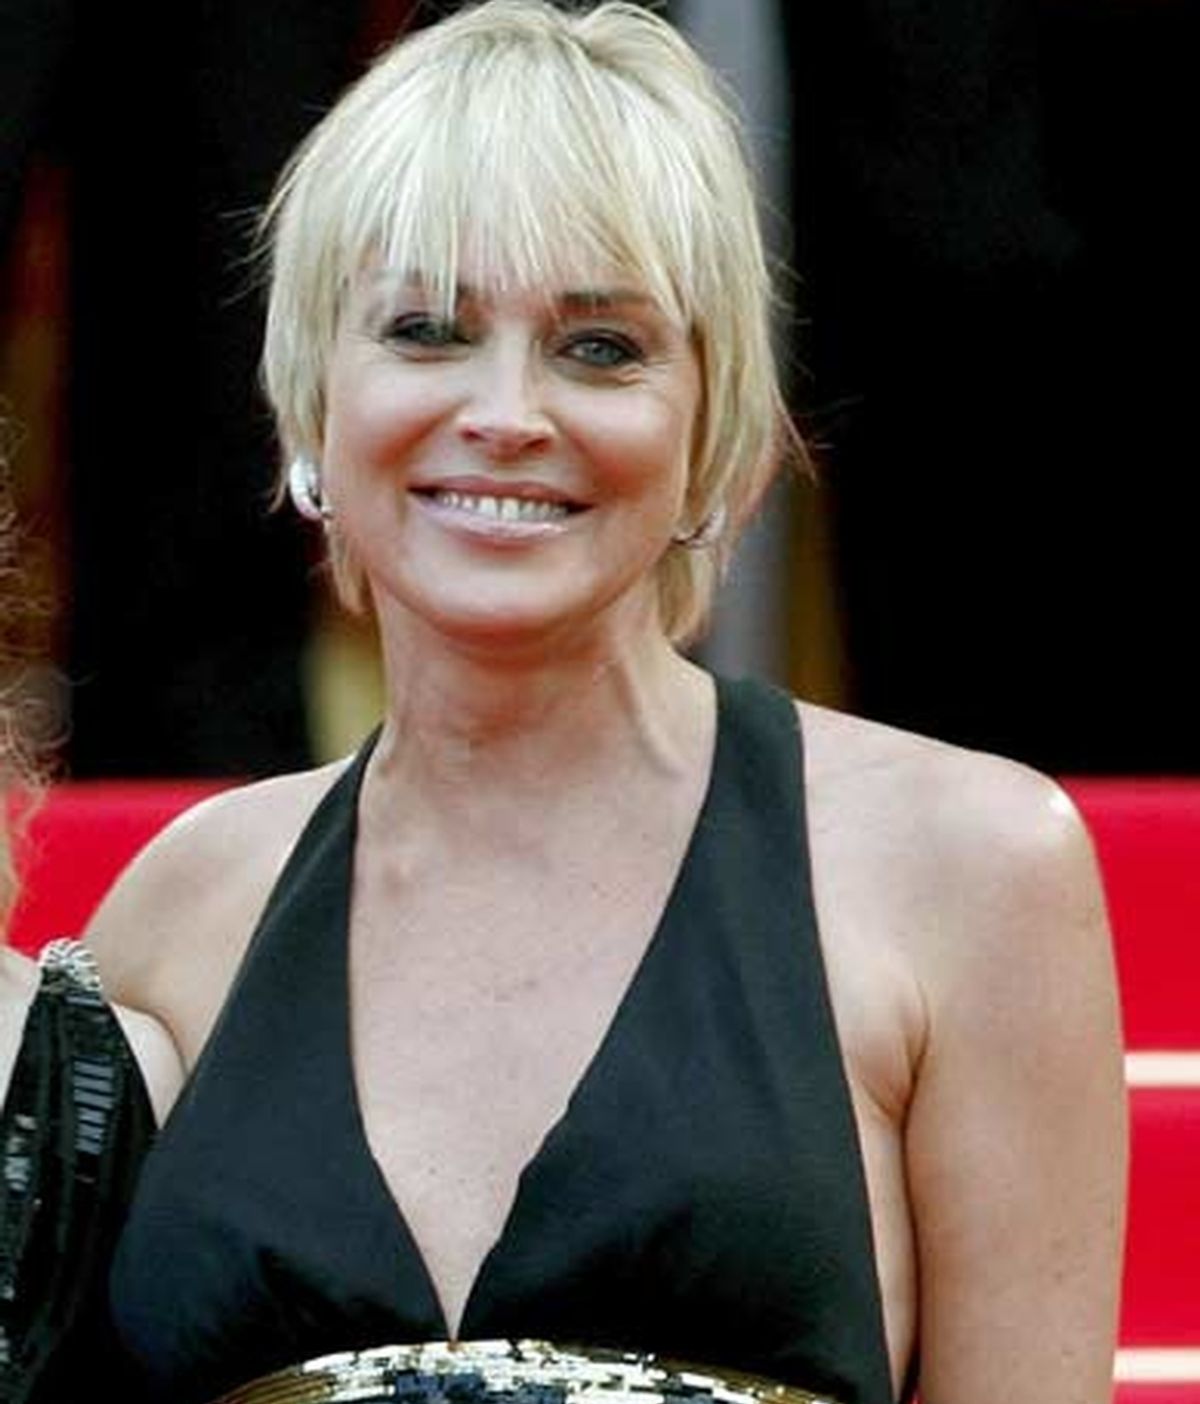 Sharon Stone, en el Festival de Cannes donde hizo las polémicas declaraciones. Foto: EFE